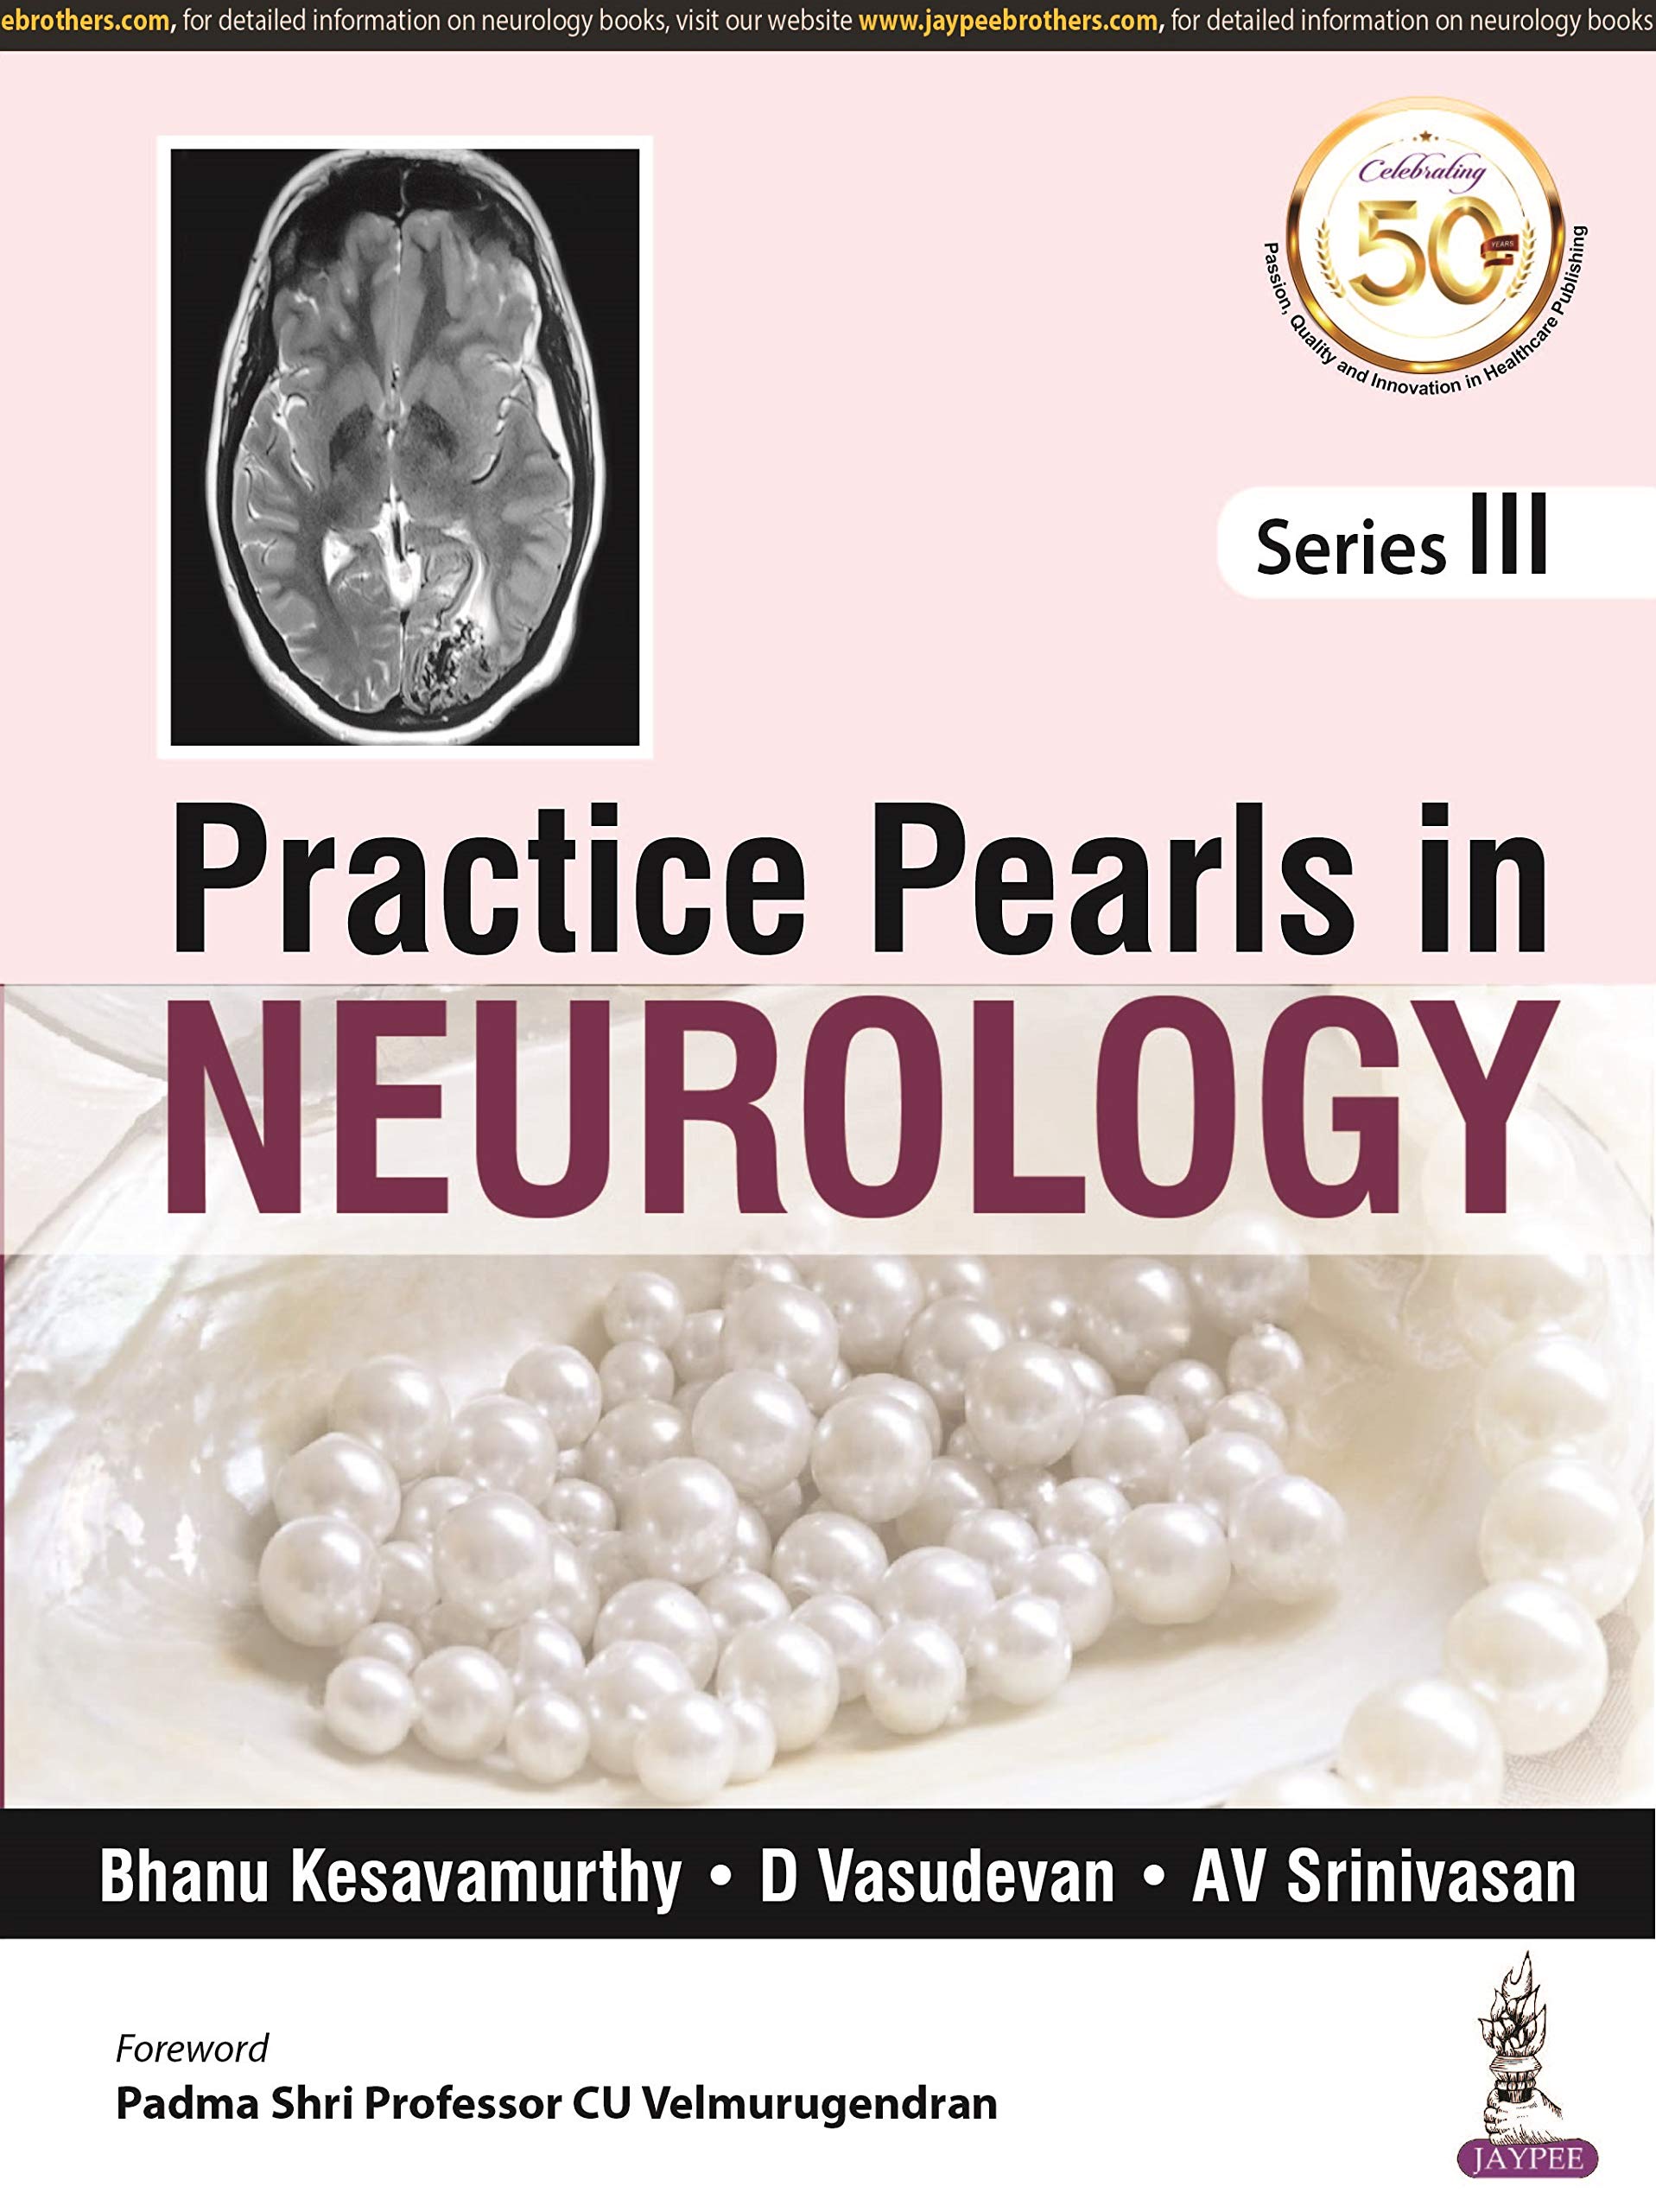 Practice Pearls In Neurology Series Iii